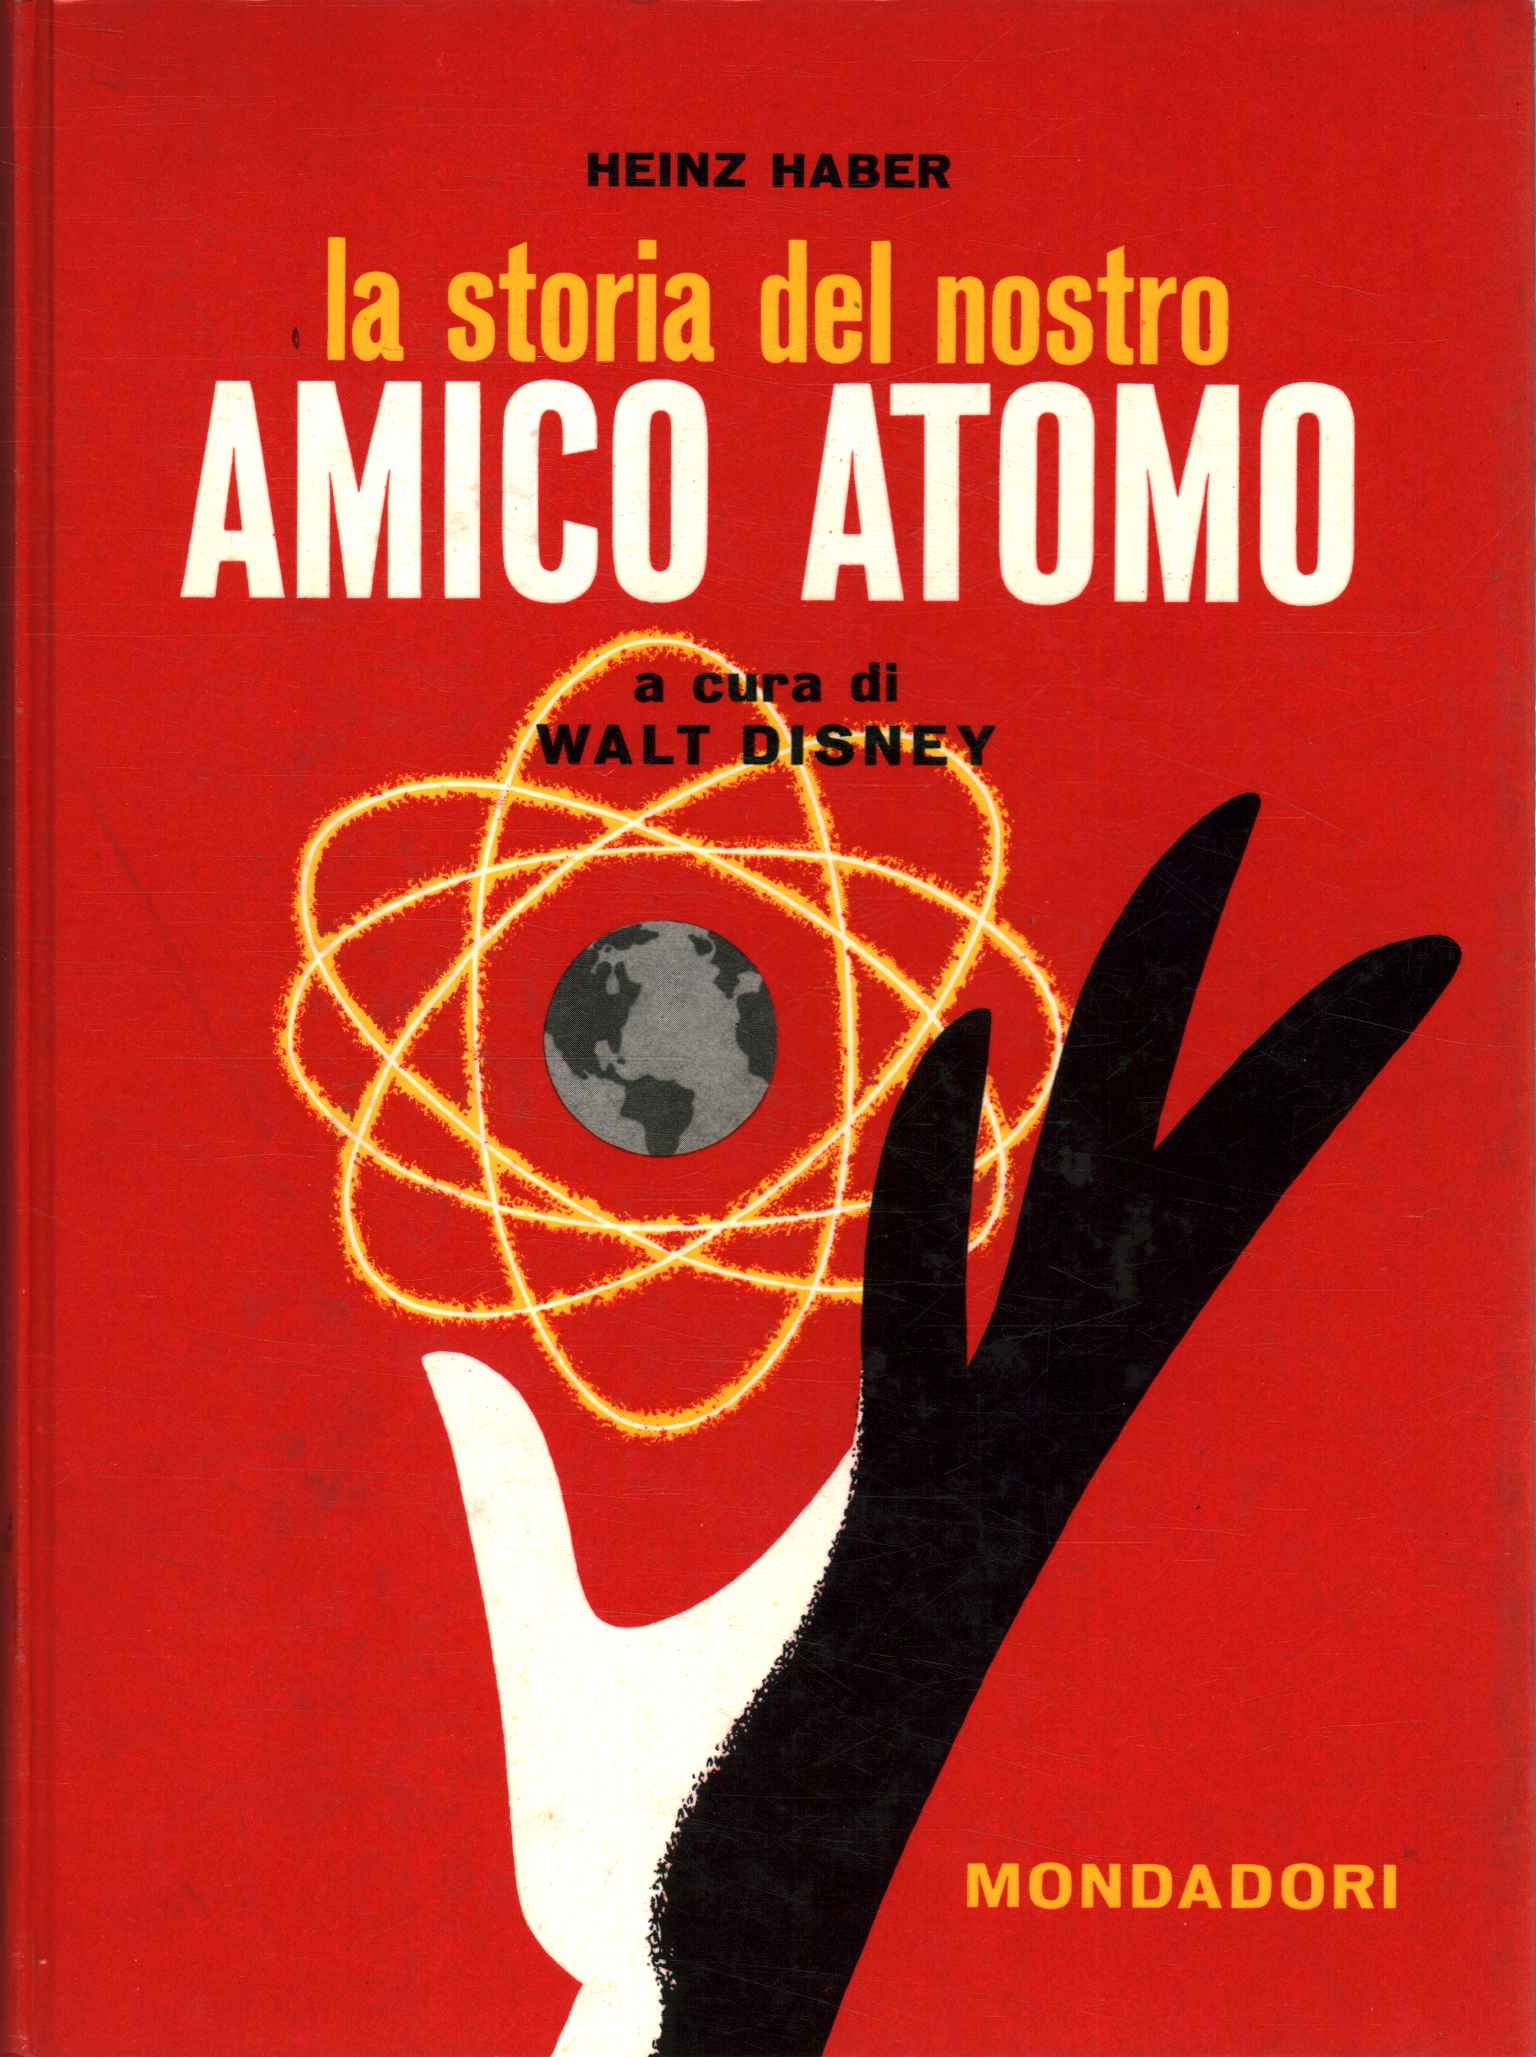 La historia de nuestro amigo el átomo.